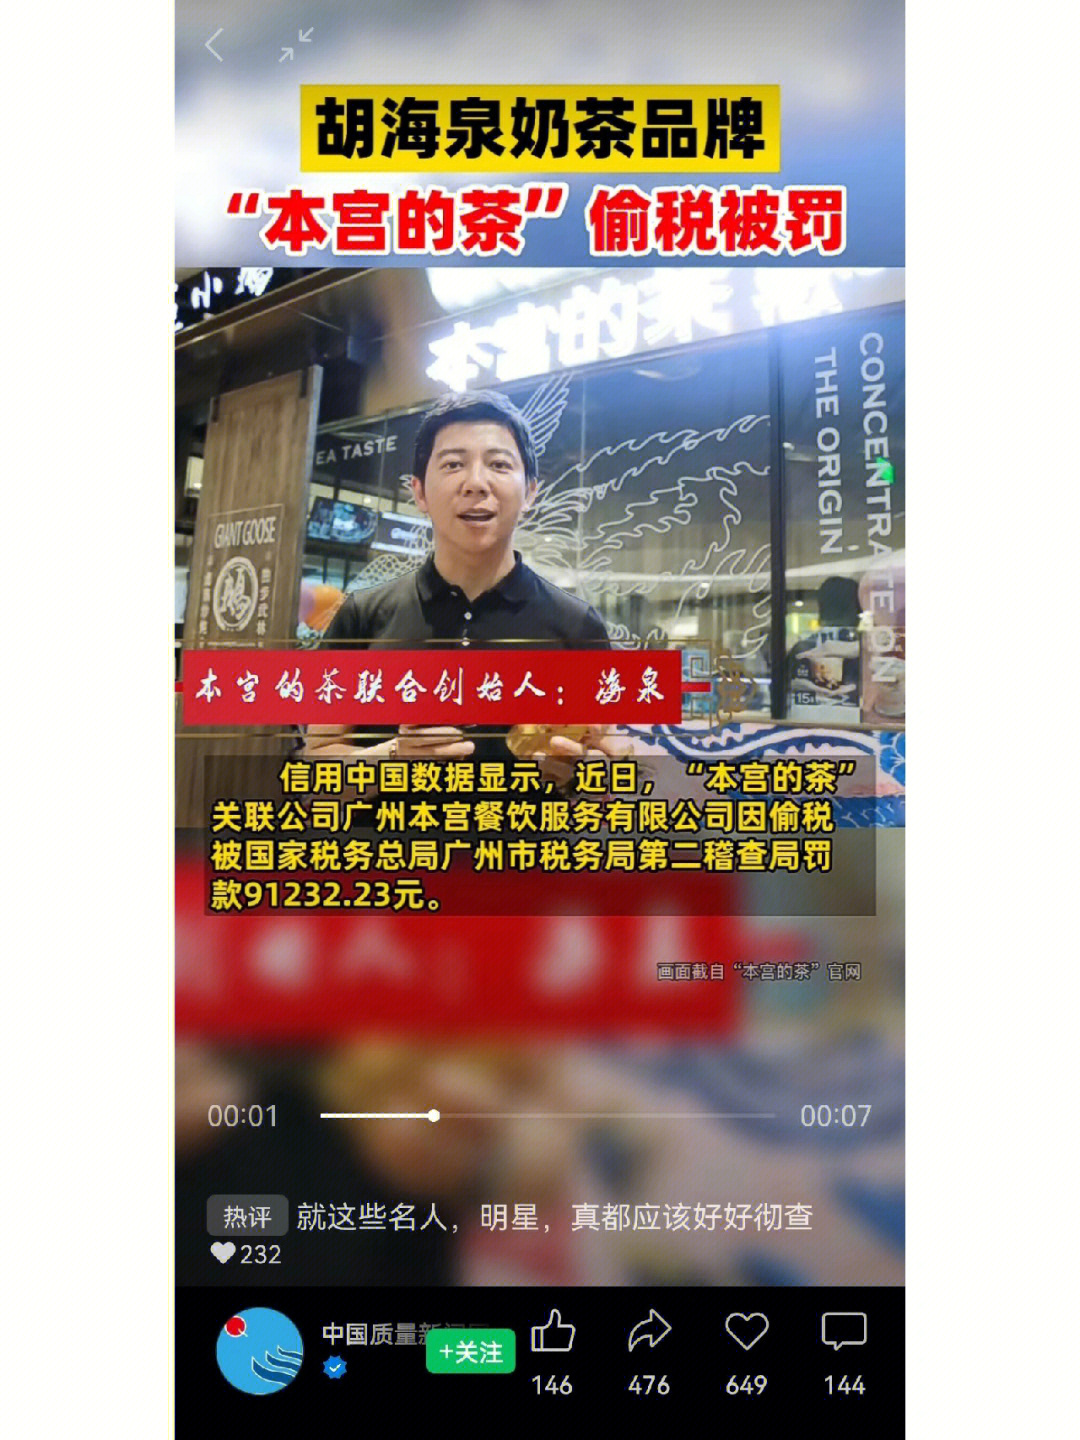 近日,胡海泉奶茶品牌本宫的茶偷税被罚,关联公司广州本宫餐饮服务